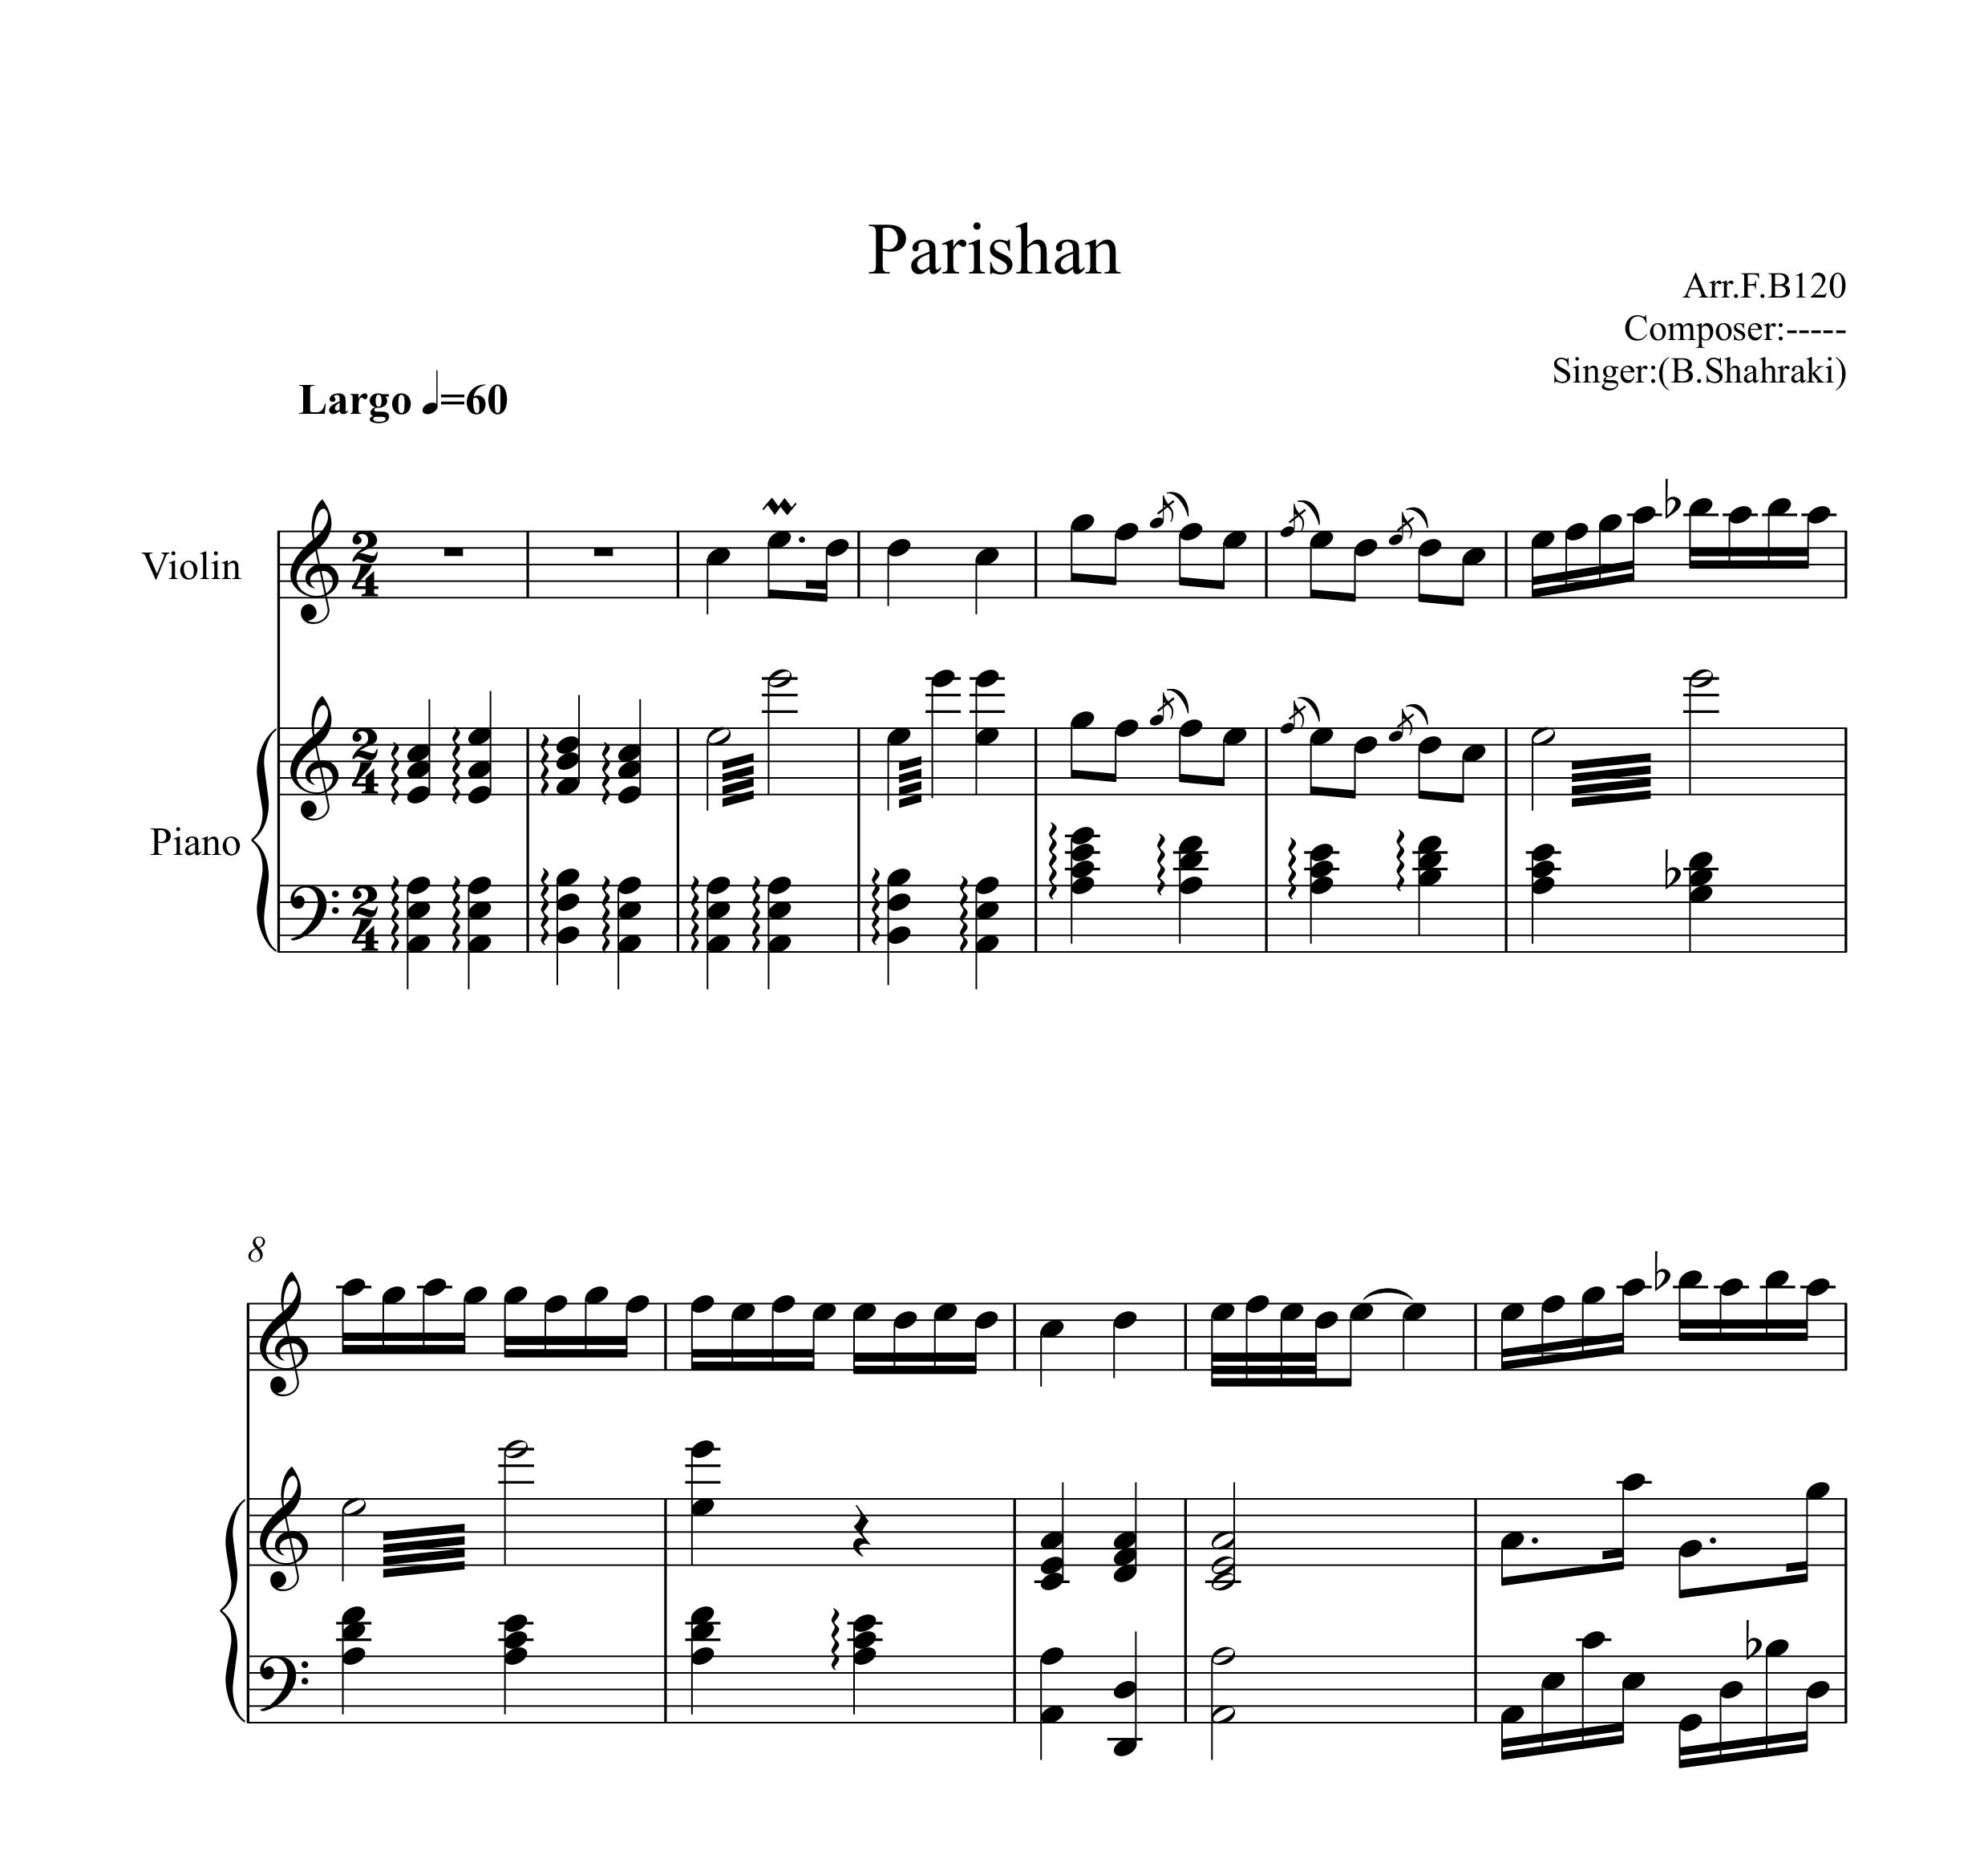 نت قطعه پریشان از بابک شهرکی برای دو نوازی ویولن و پیانو